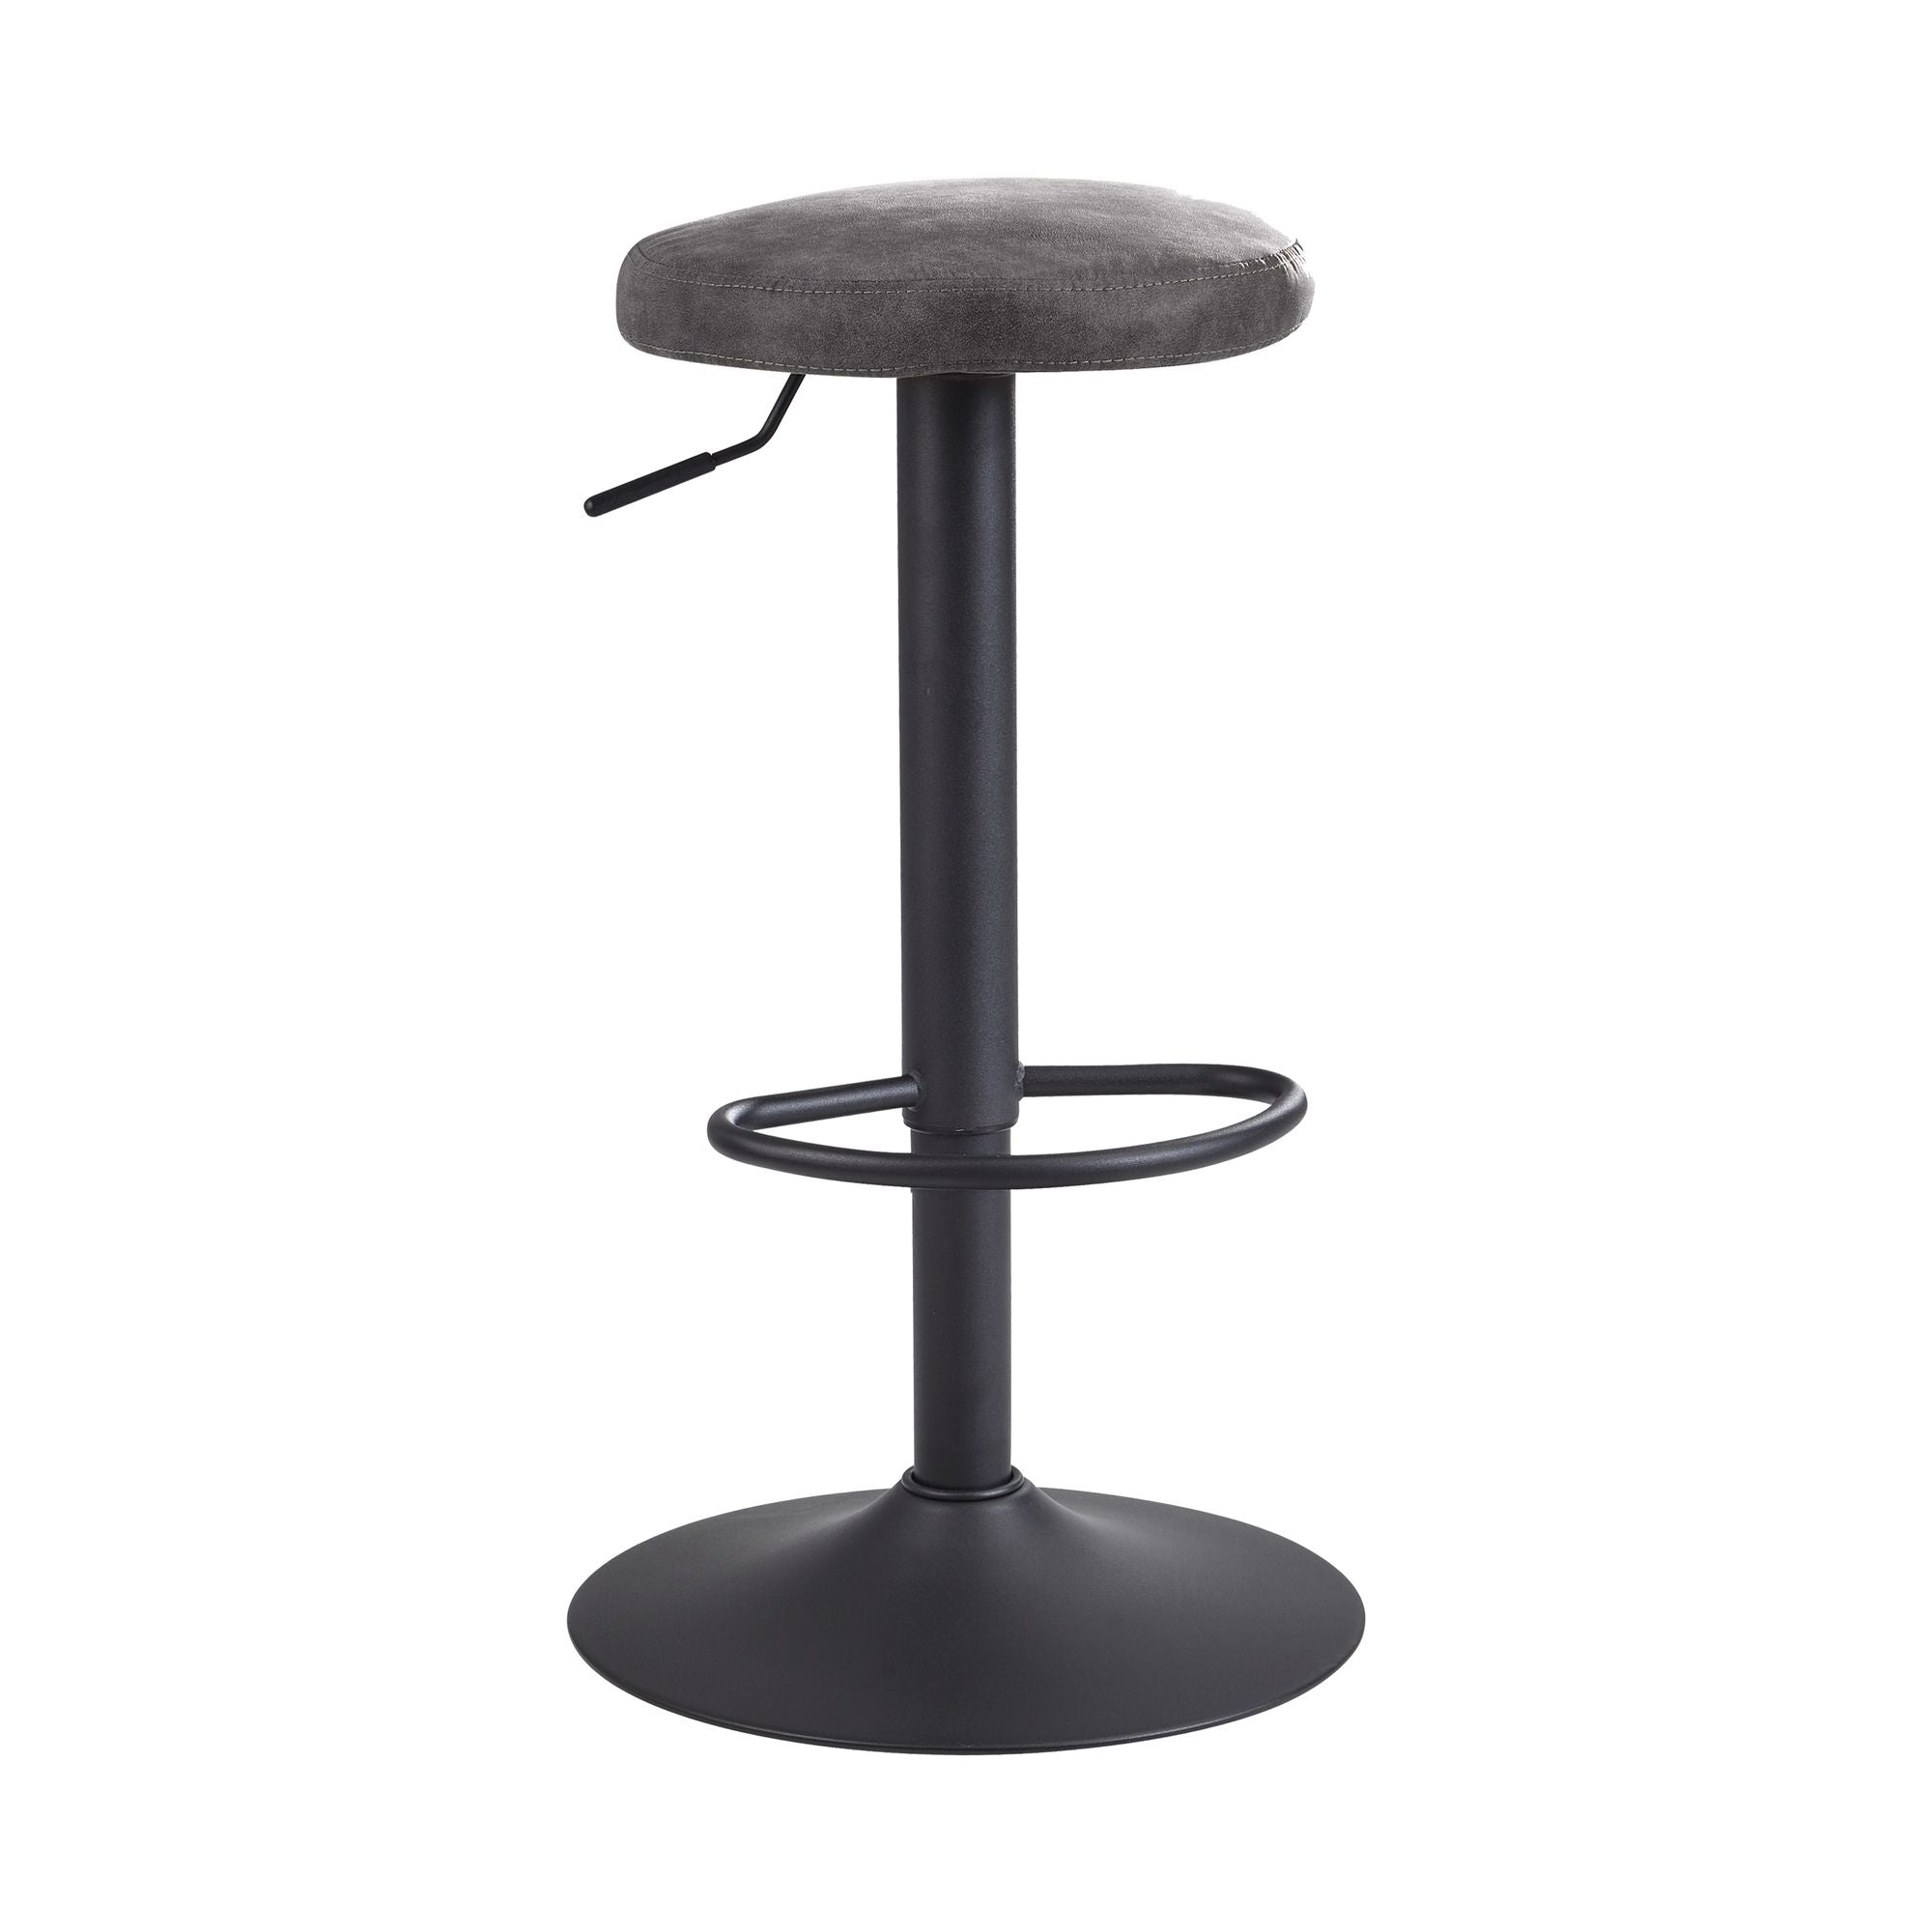 16: Roterende barstol / bistrostol, grå ruskind skammel uden ryglæn, 58-79 cm